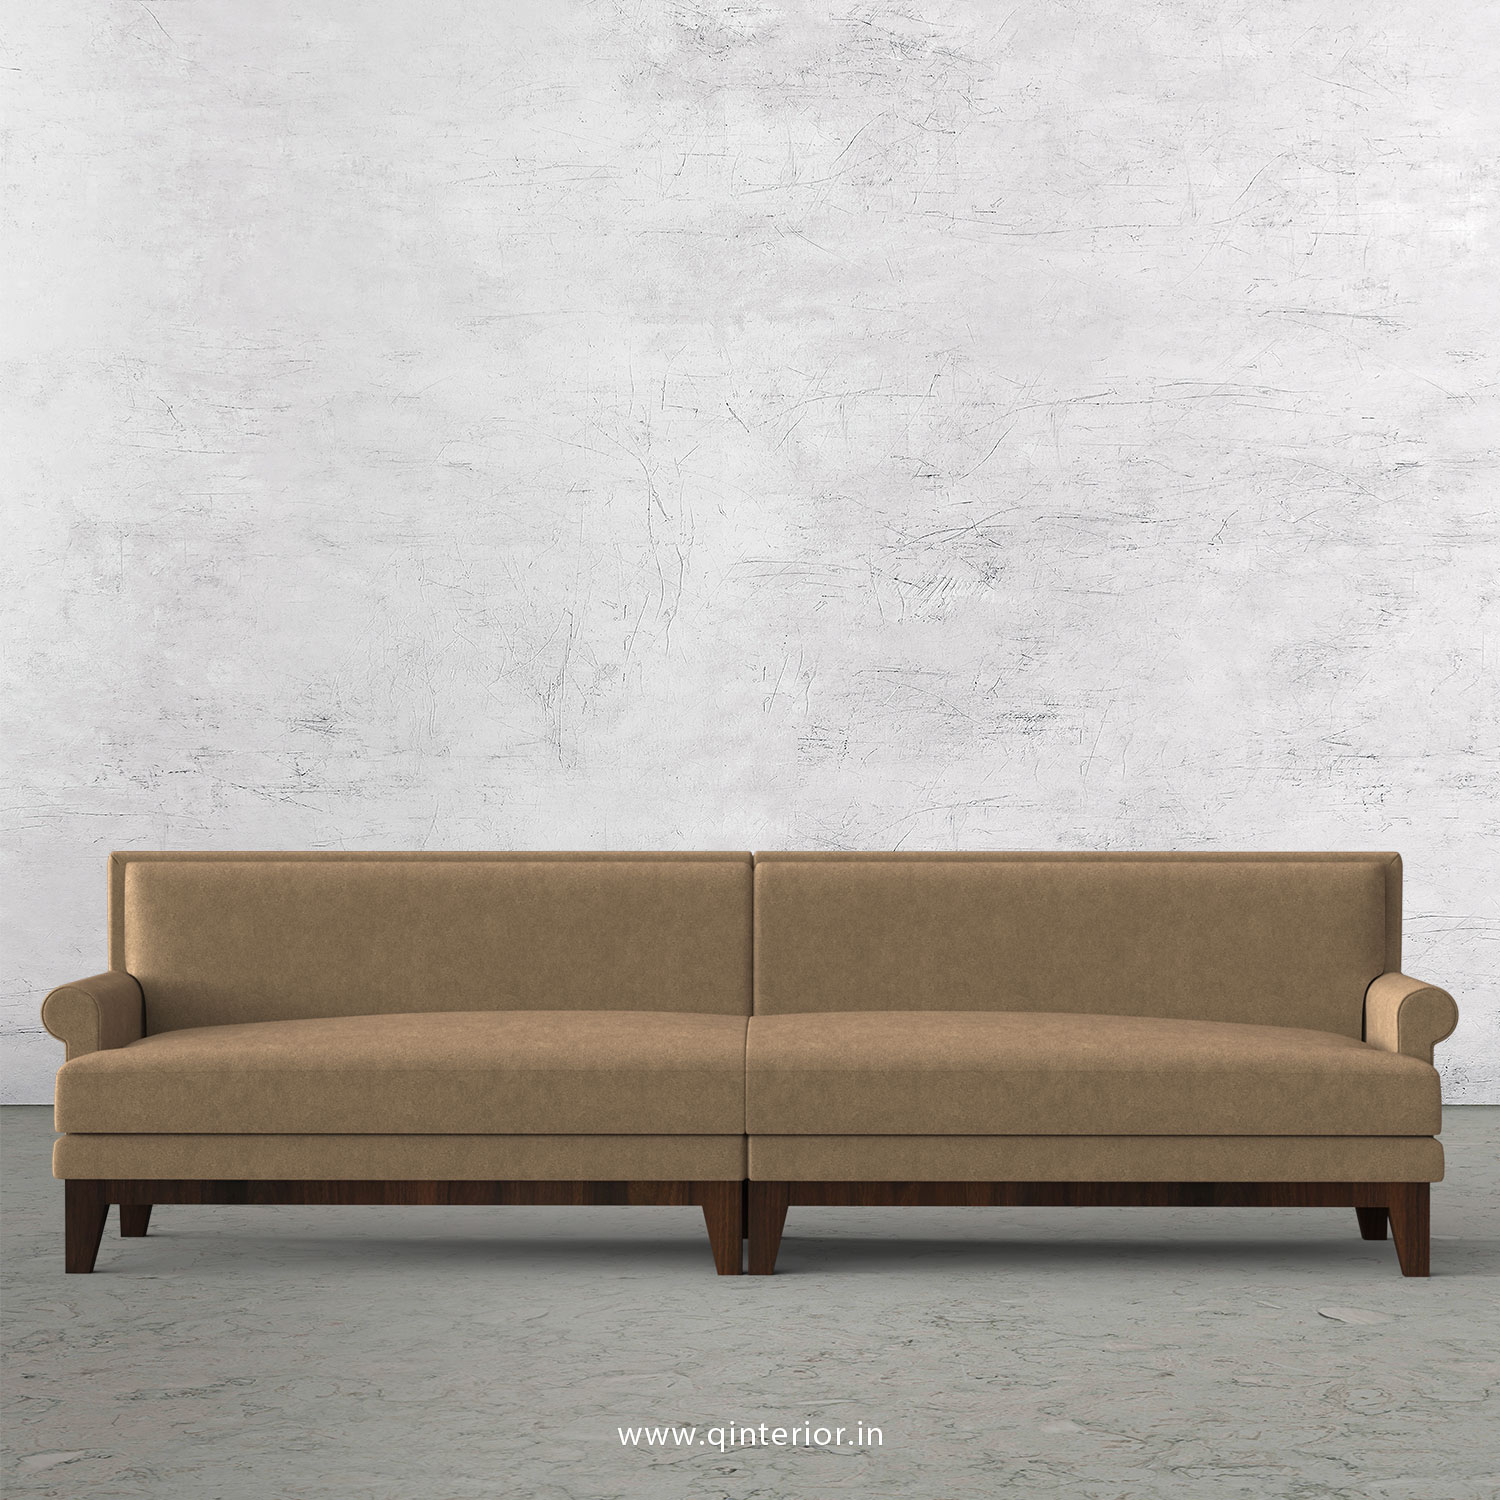 Aviana 4 Seater Sofa in Velvet Fabric - SFA001 VL03